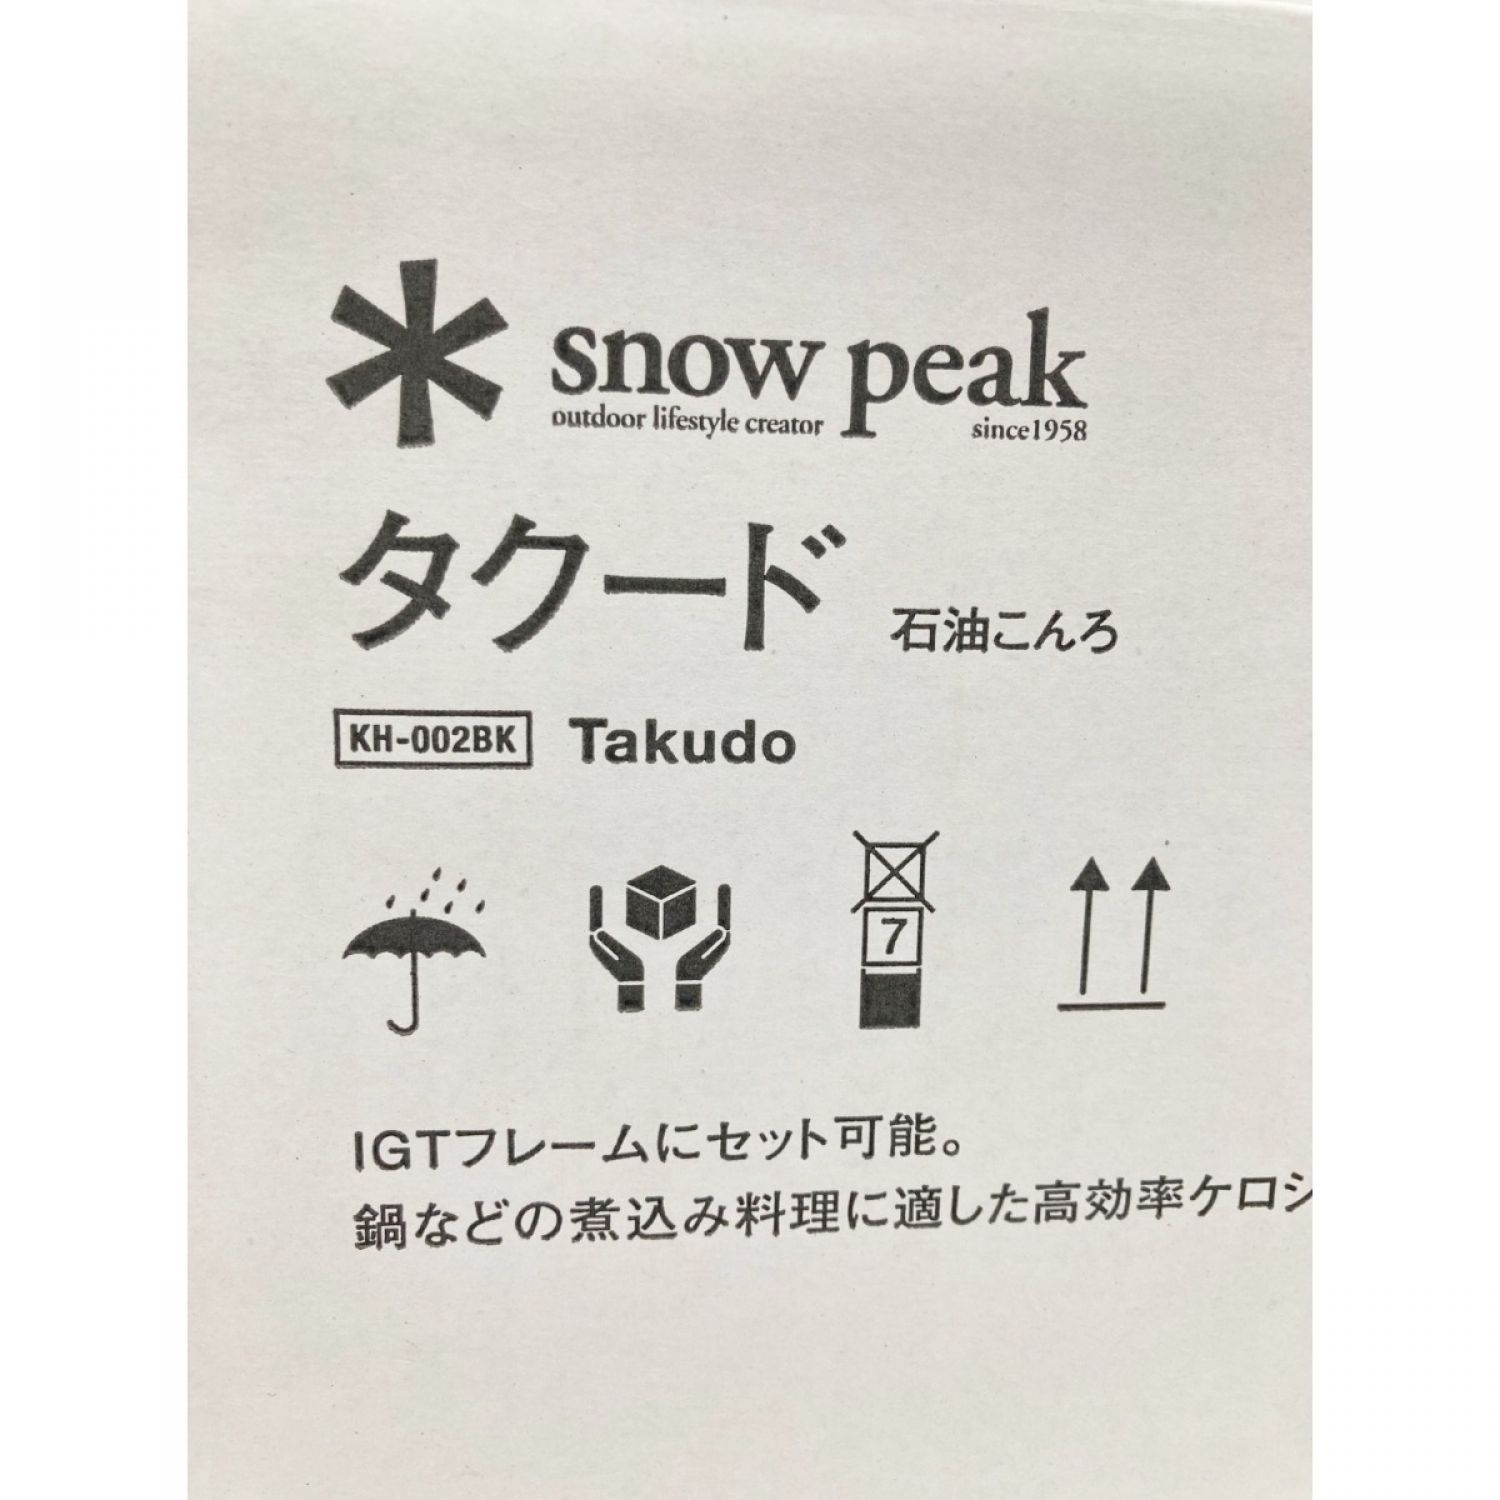 中古】 snowpeak スノーピーク タクード ストーブ KH-002BK 未開封品 S ...